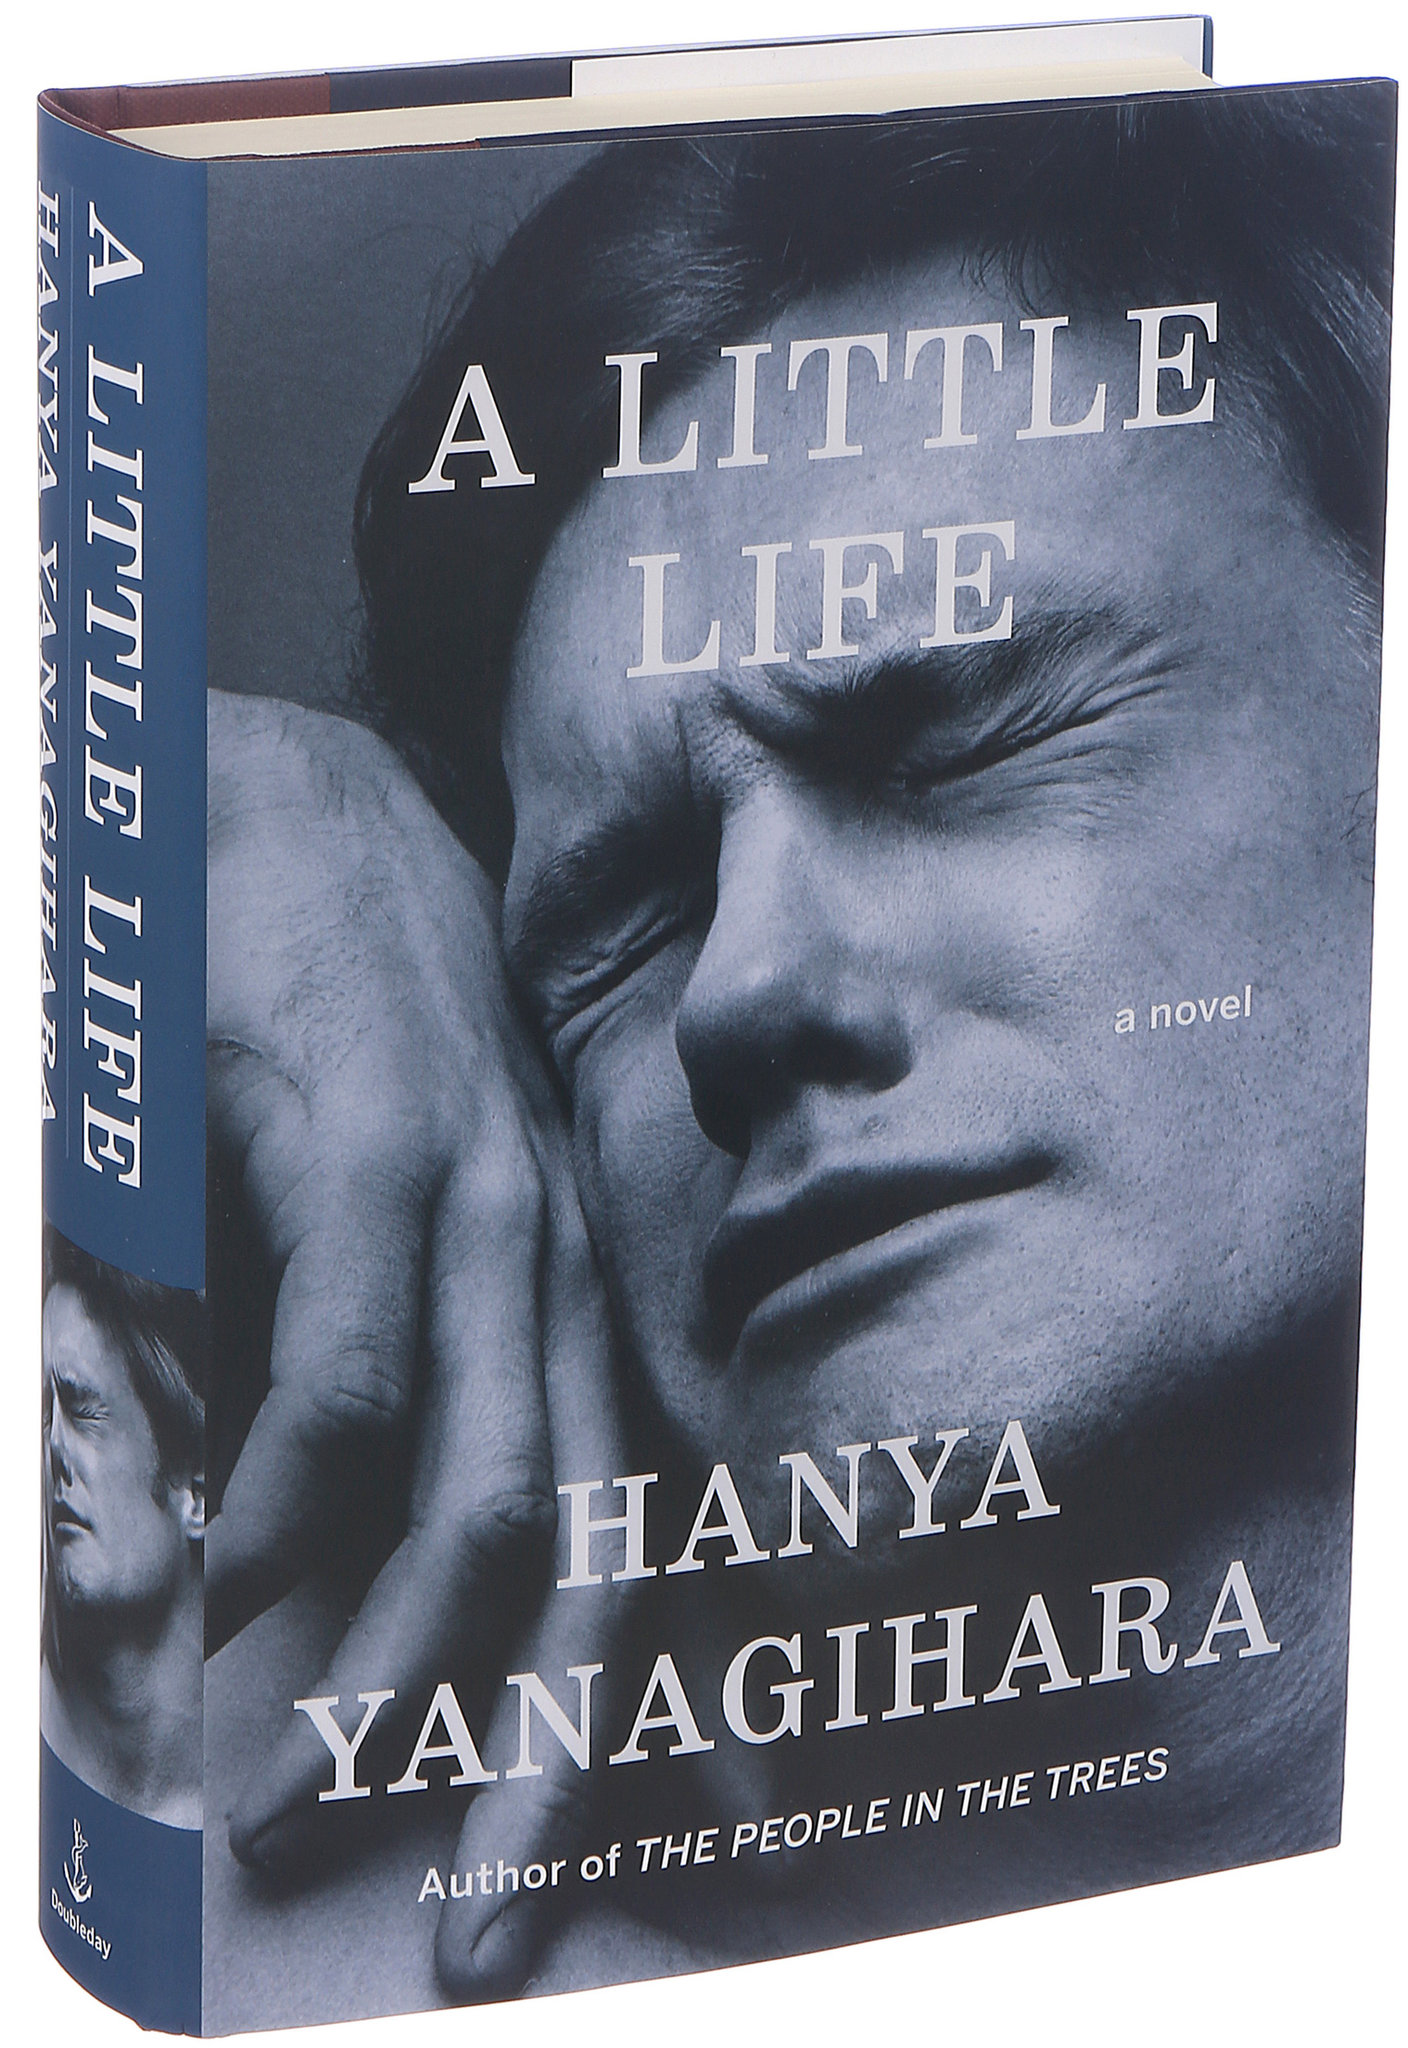 Tan poca vida - Hanya Yanagihara -5% en libros